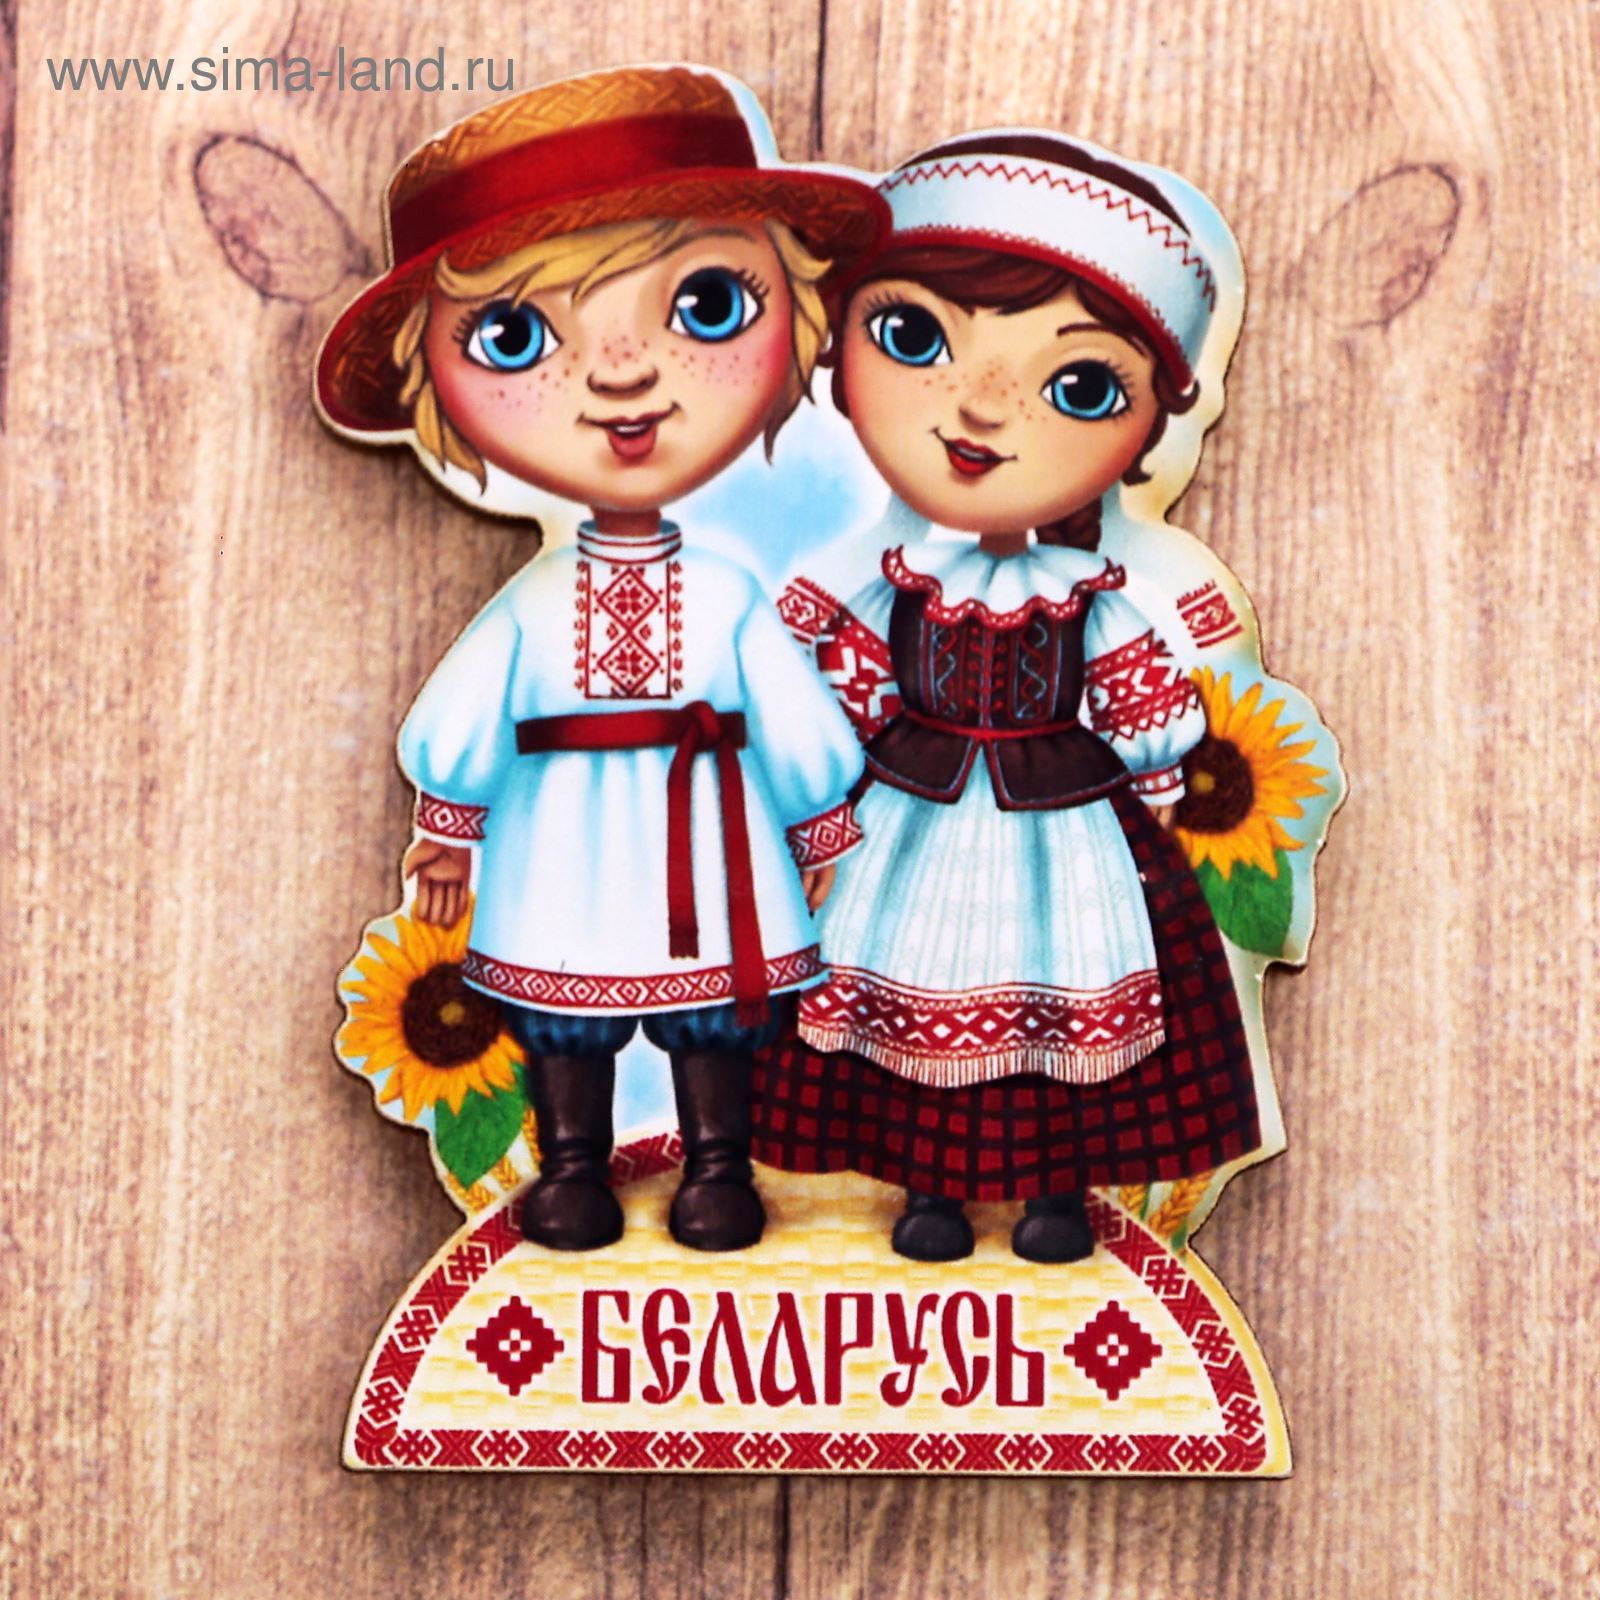 Белорусские народные сувениры